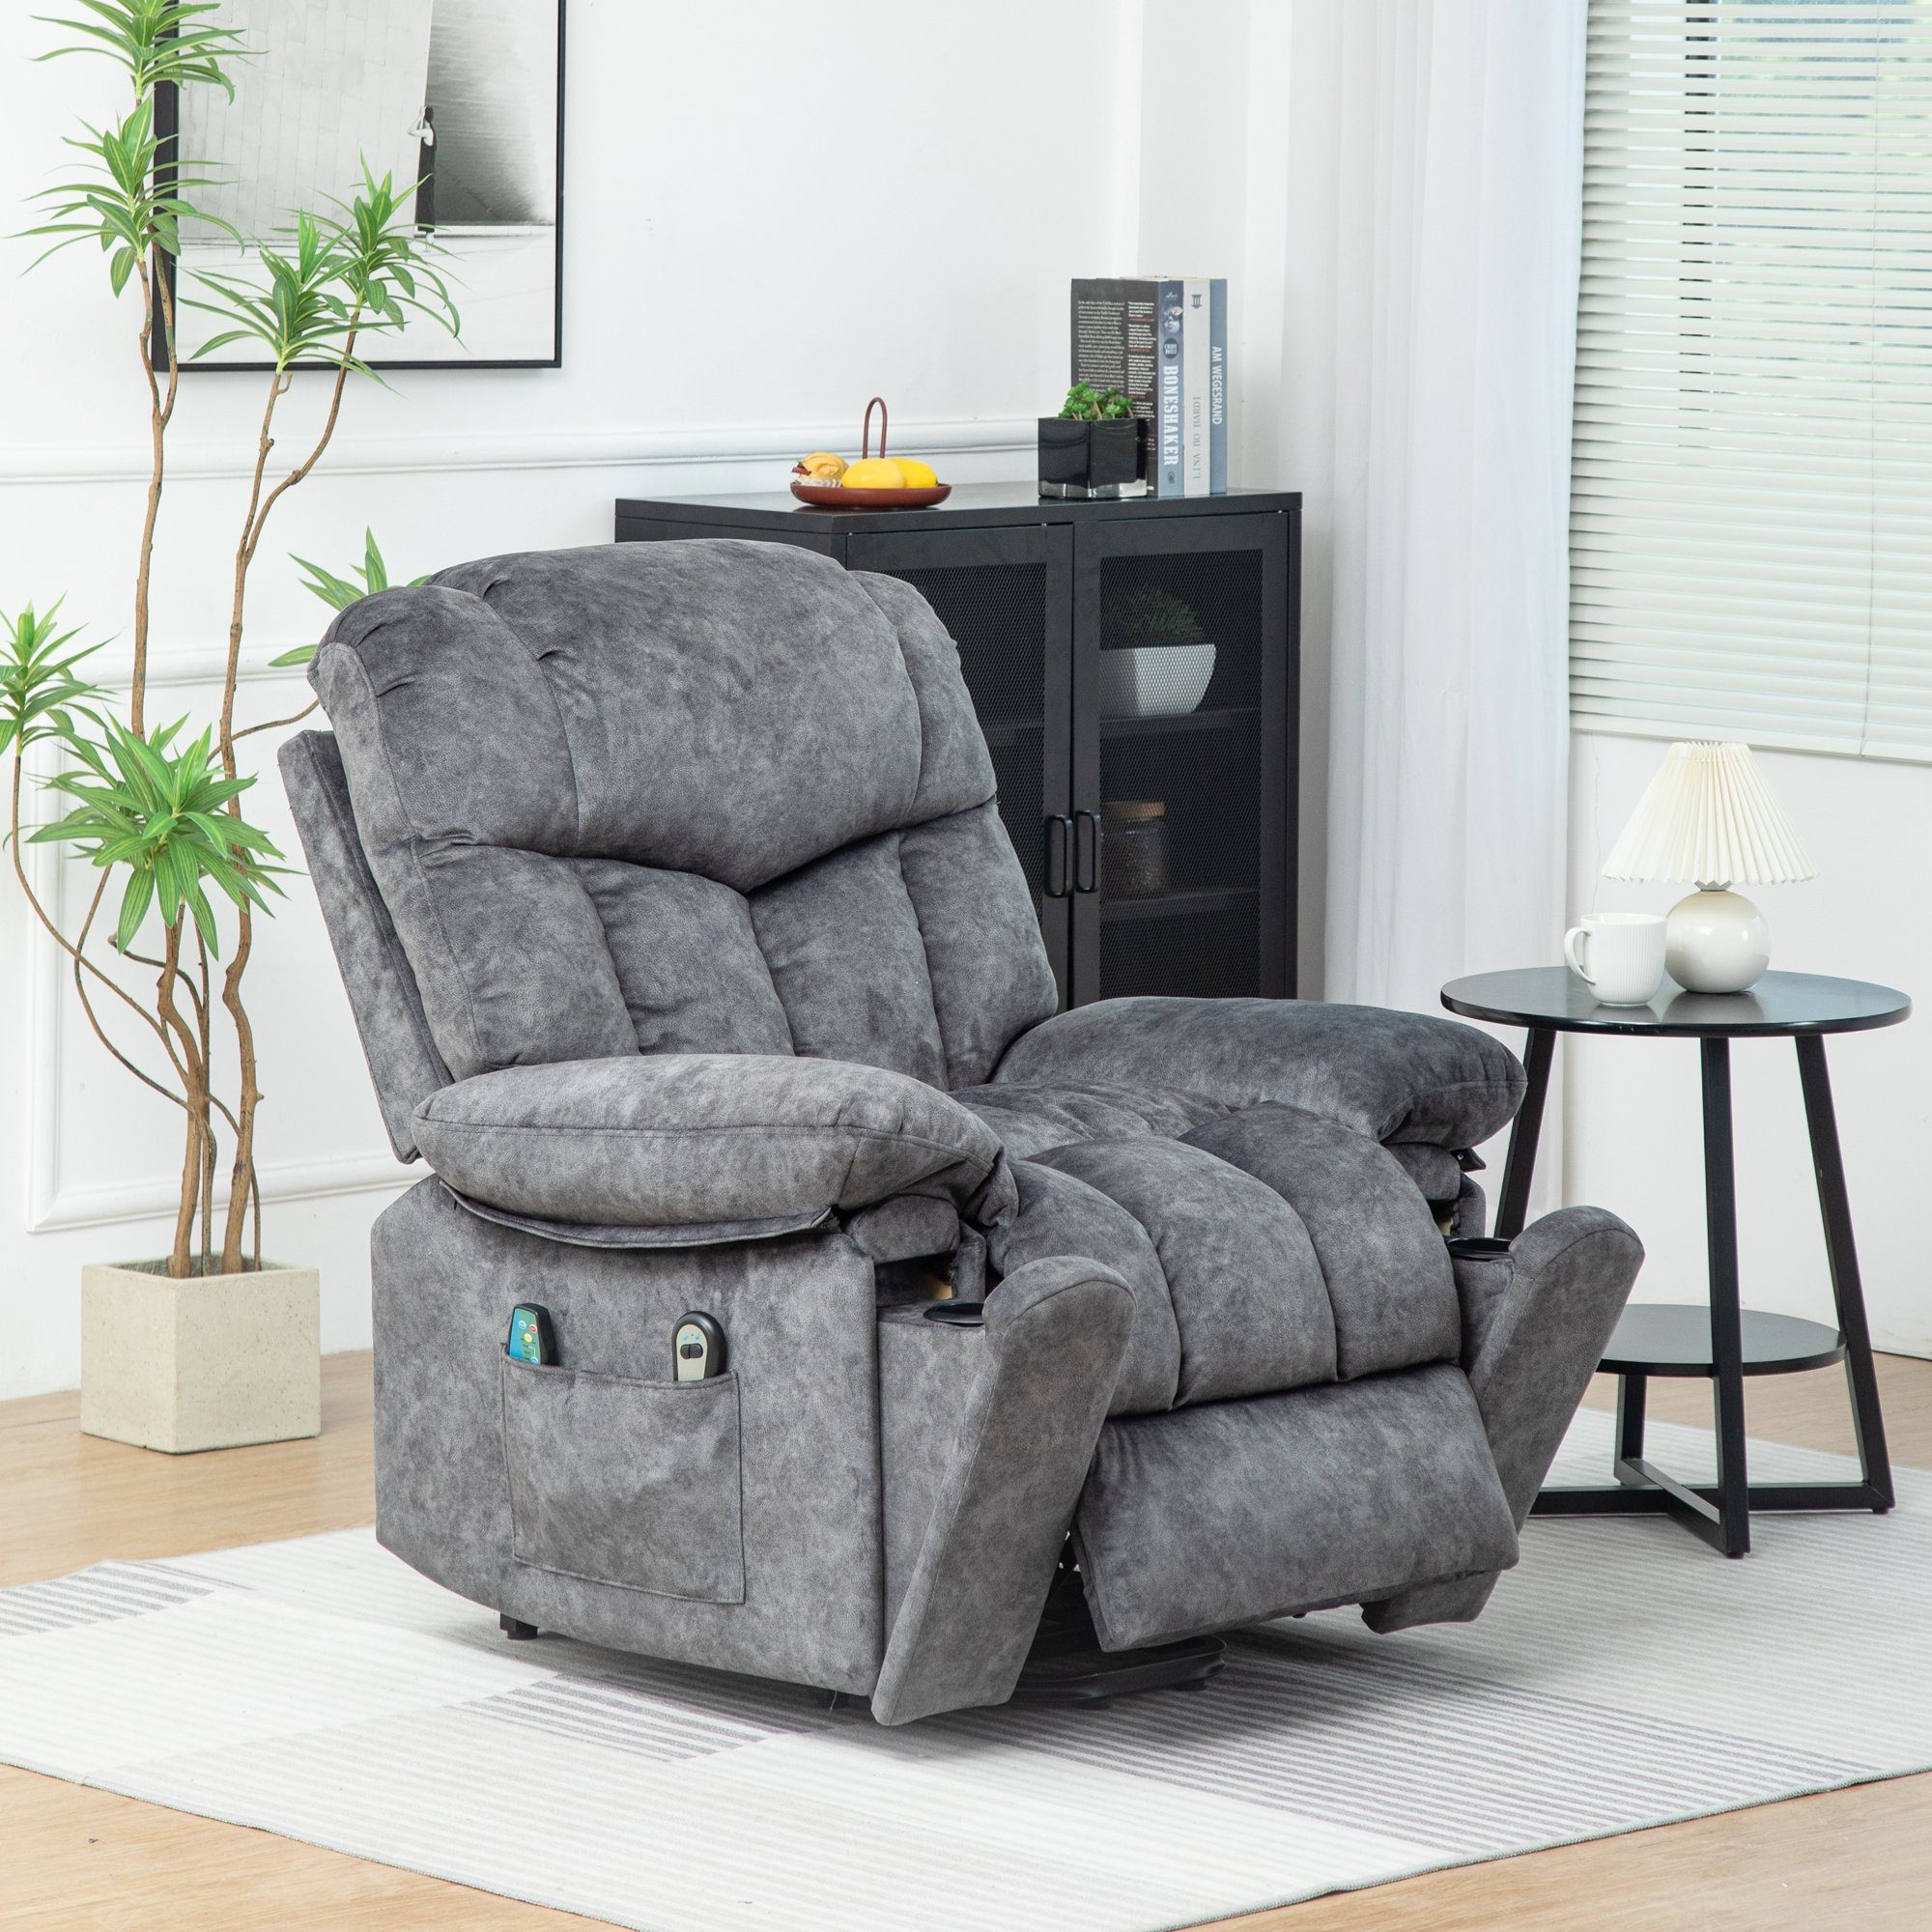 HAUSS SPLOE TV-Sessel Massagesessel Fernsehsessel Elektrischer Relaxsessel Einzelsessel (Elegantes Design mit Samtoberfläche und Aufbewahrungstaschen., liegen Einzelsessel Fernsehsessel Liegestuhl) Grau